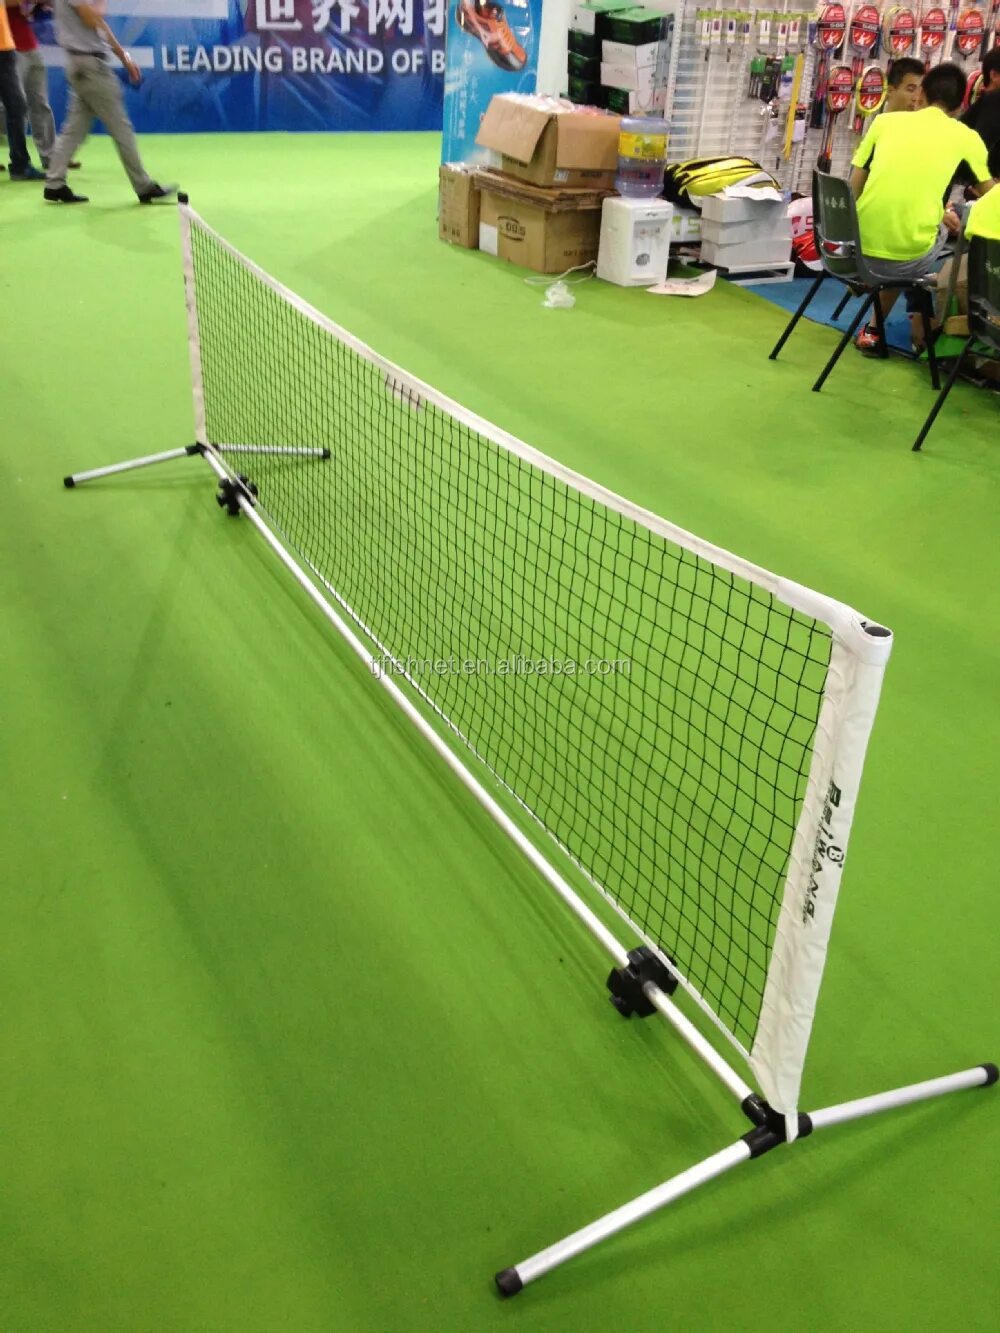 Сетка для настольного тенниса купить. Теннисная сетка Торнео. Сетка для детского тенниса Mini Tennis net 6.1m. Переносной барьер-сетка для мини-тенниса, 6,1х0,85 м. Сетка для мини-тенниса bimbi 610*85 см.